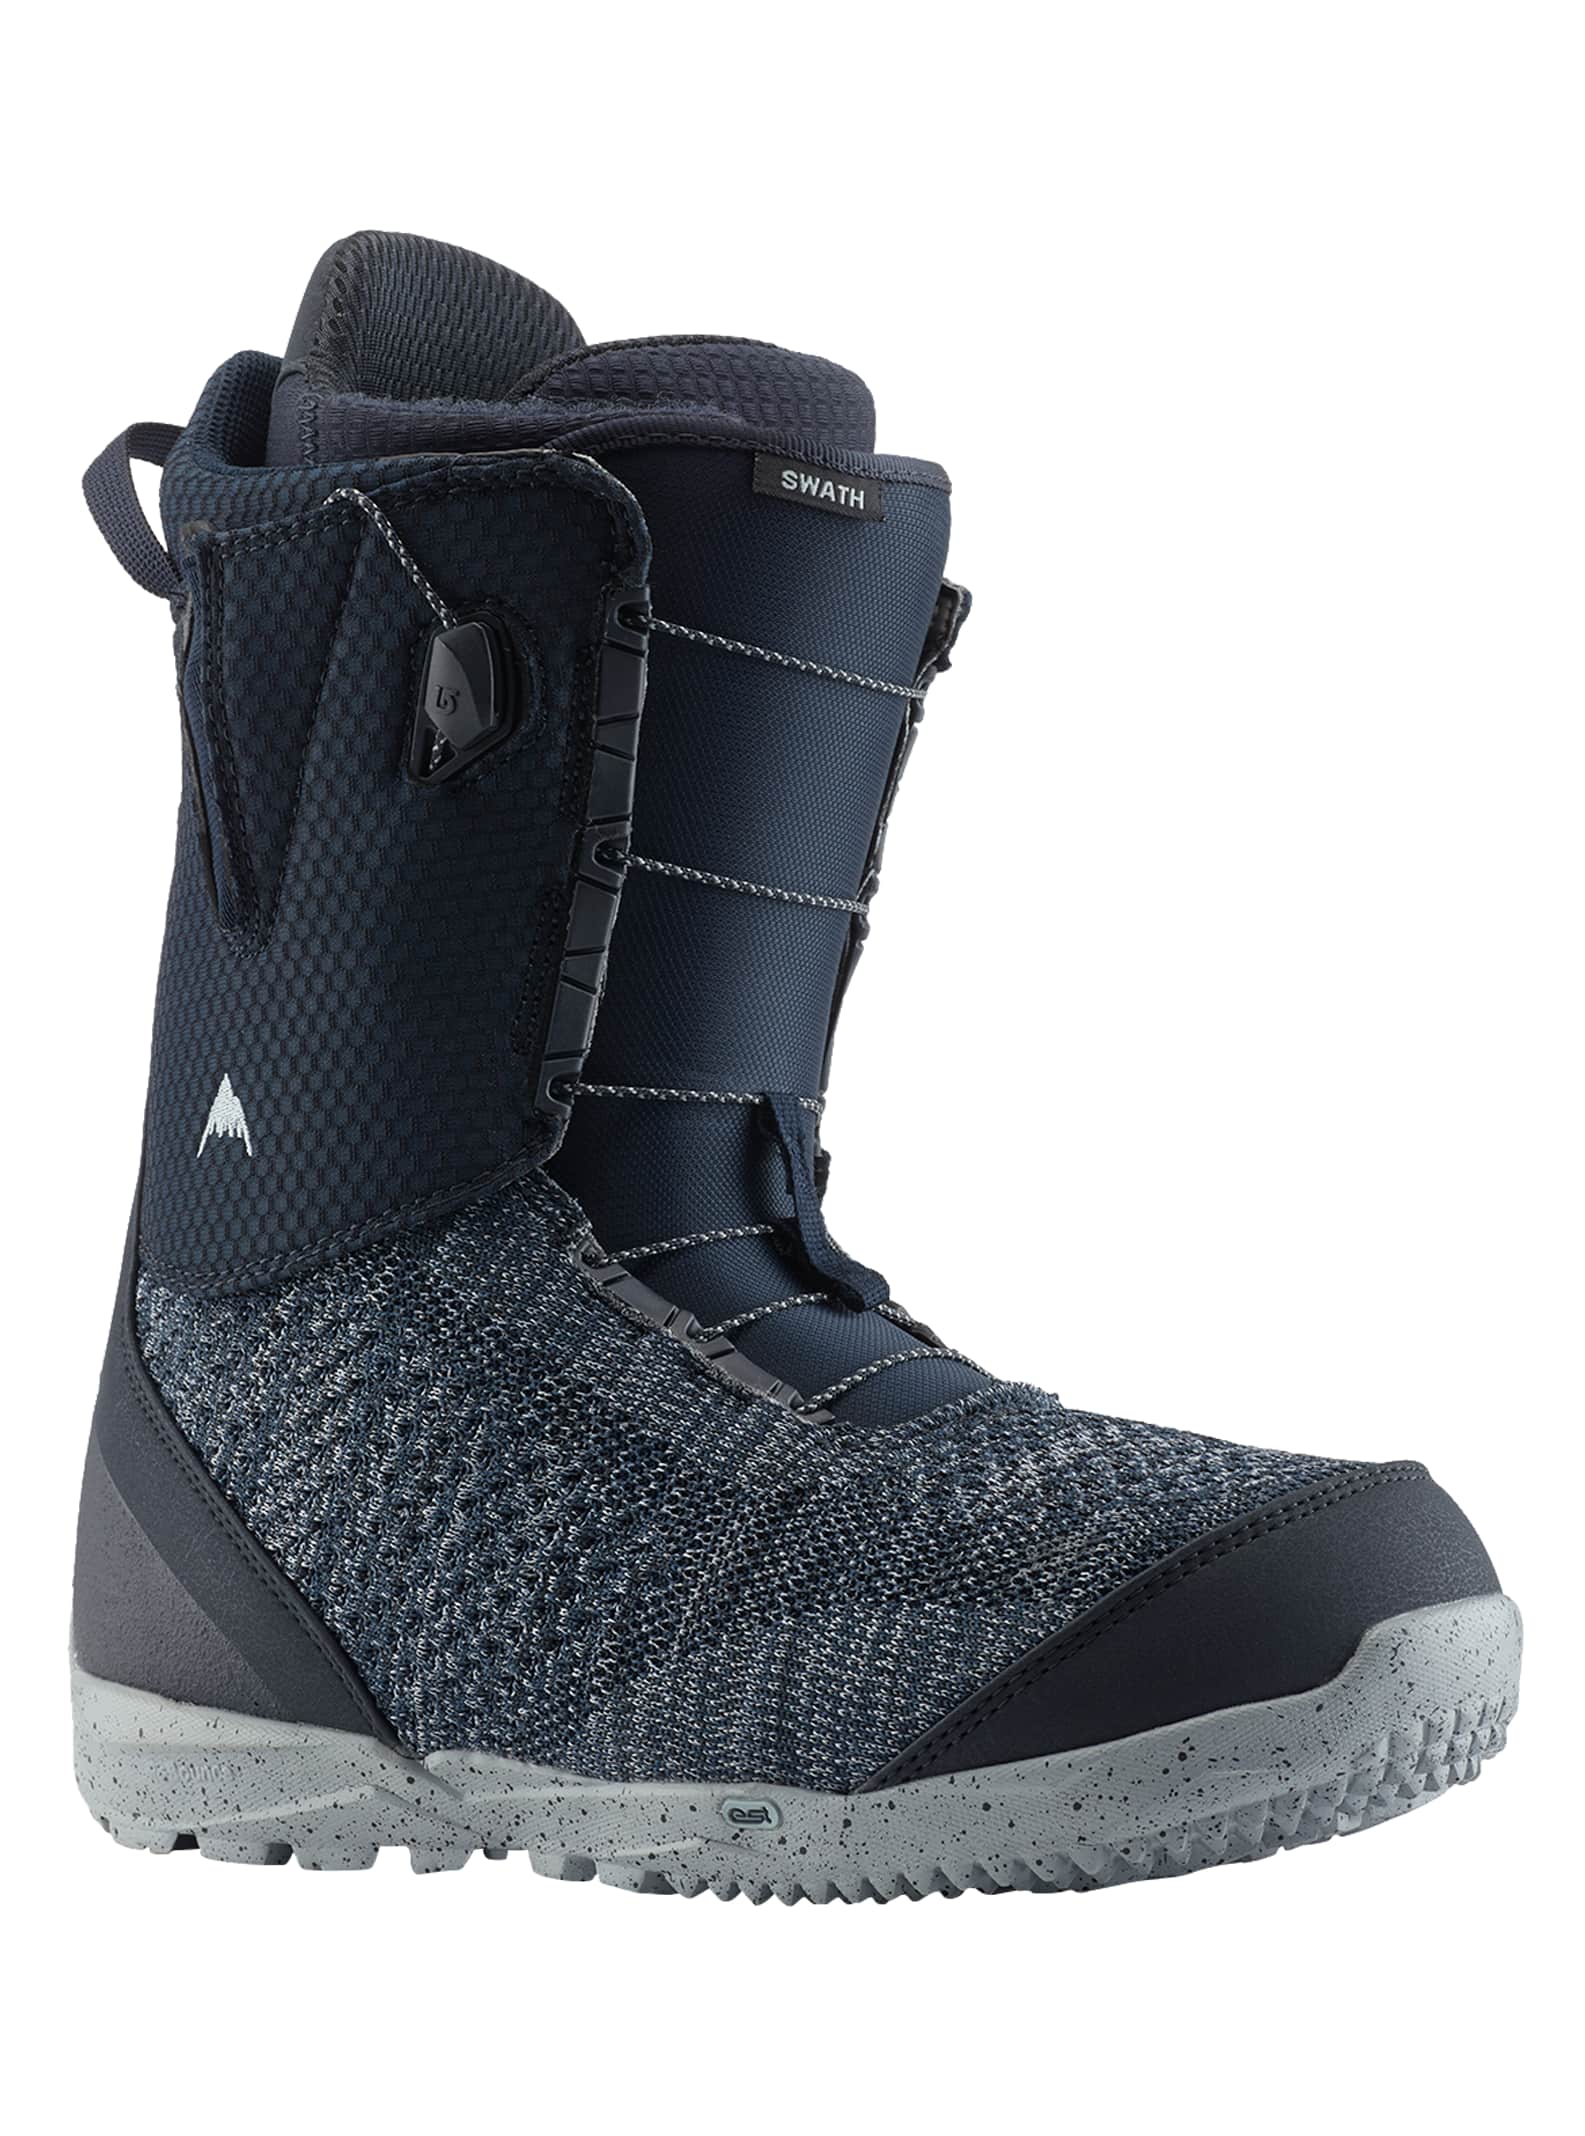 puma snowboard boots